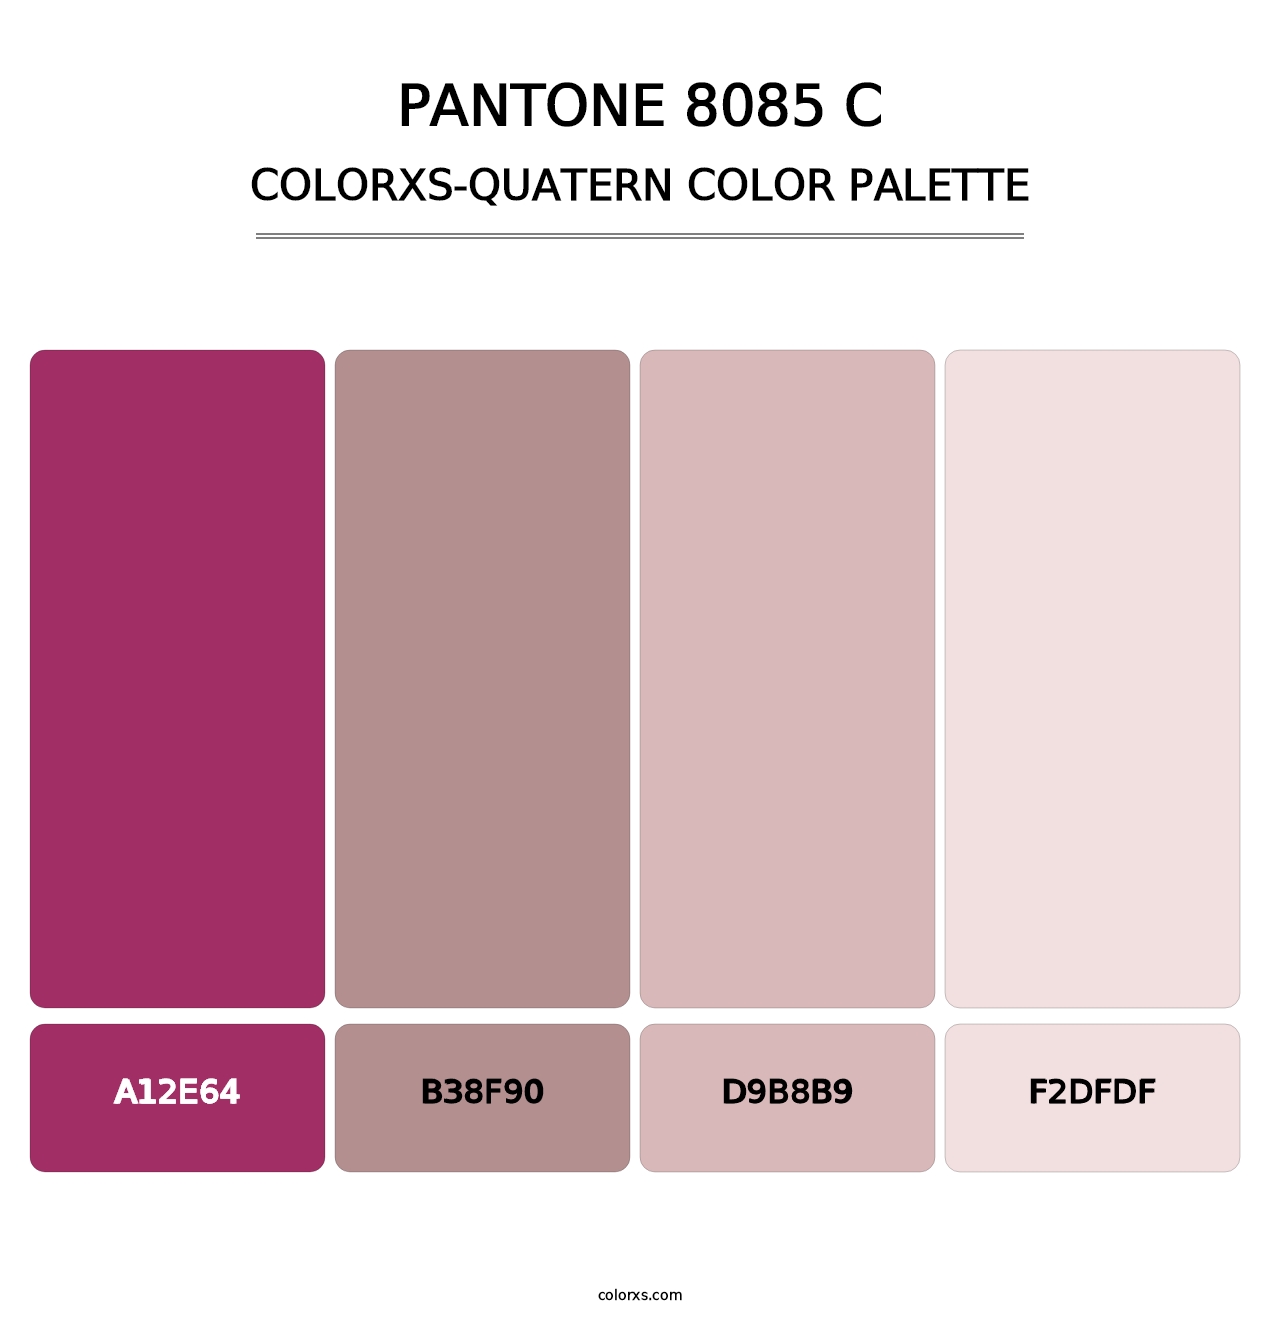 PANTONE 8085 C - Colorxs Quatern Palette